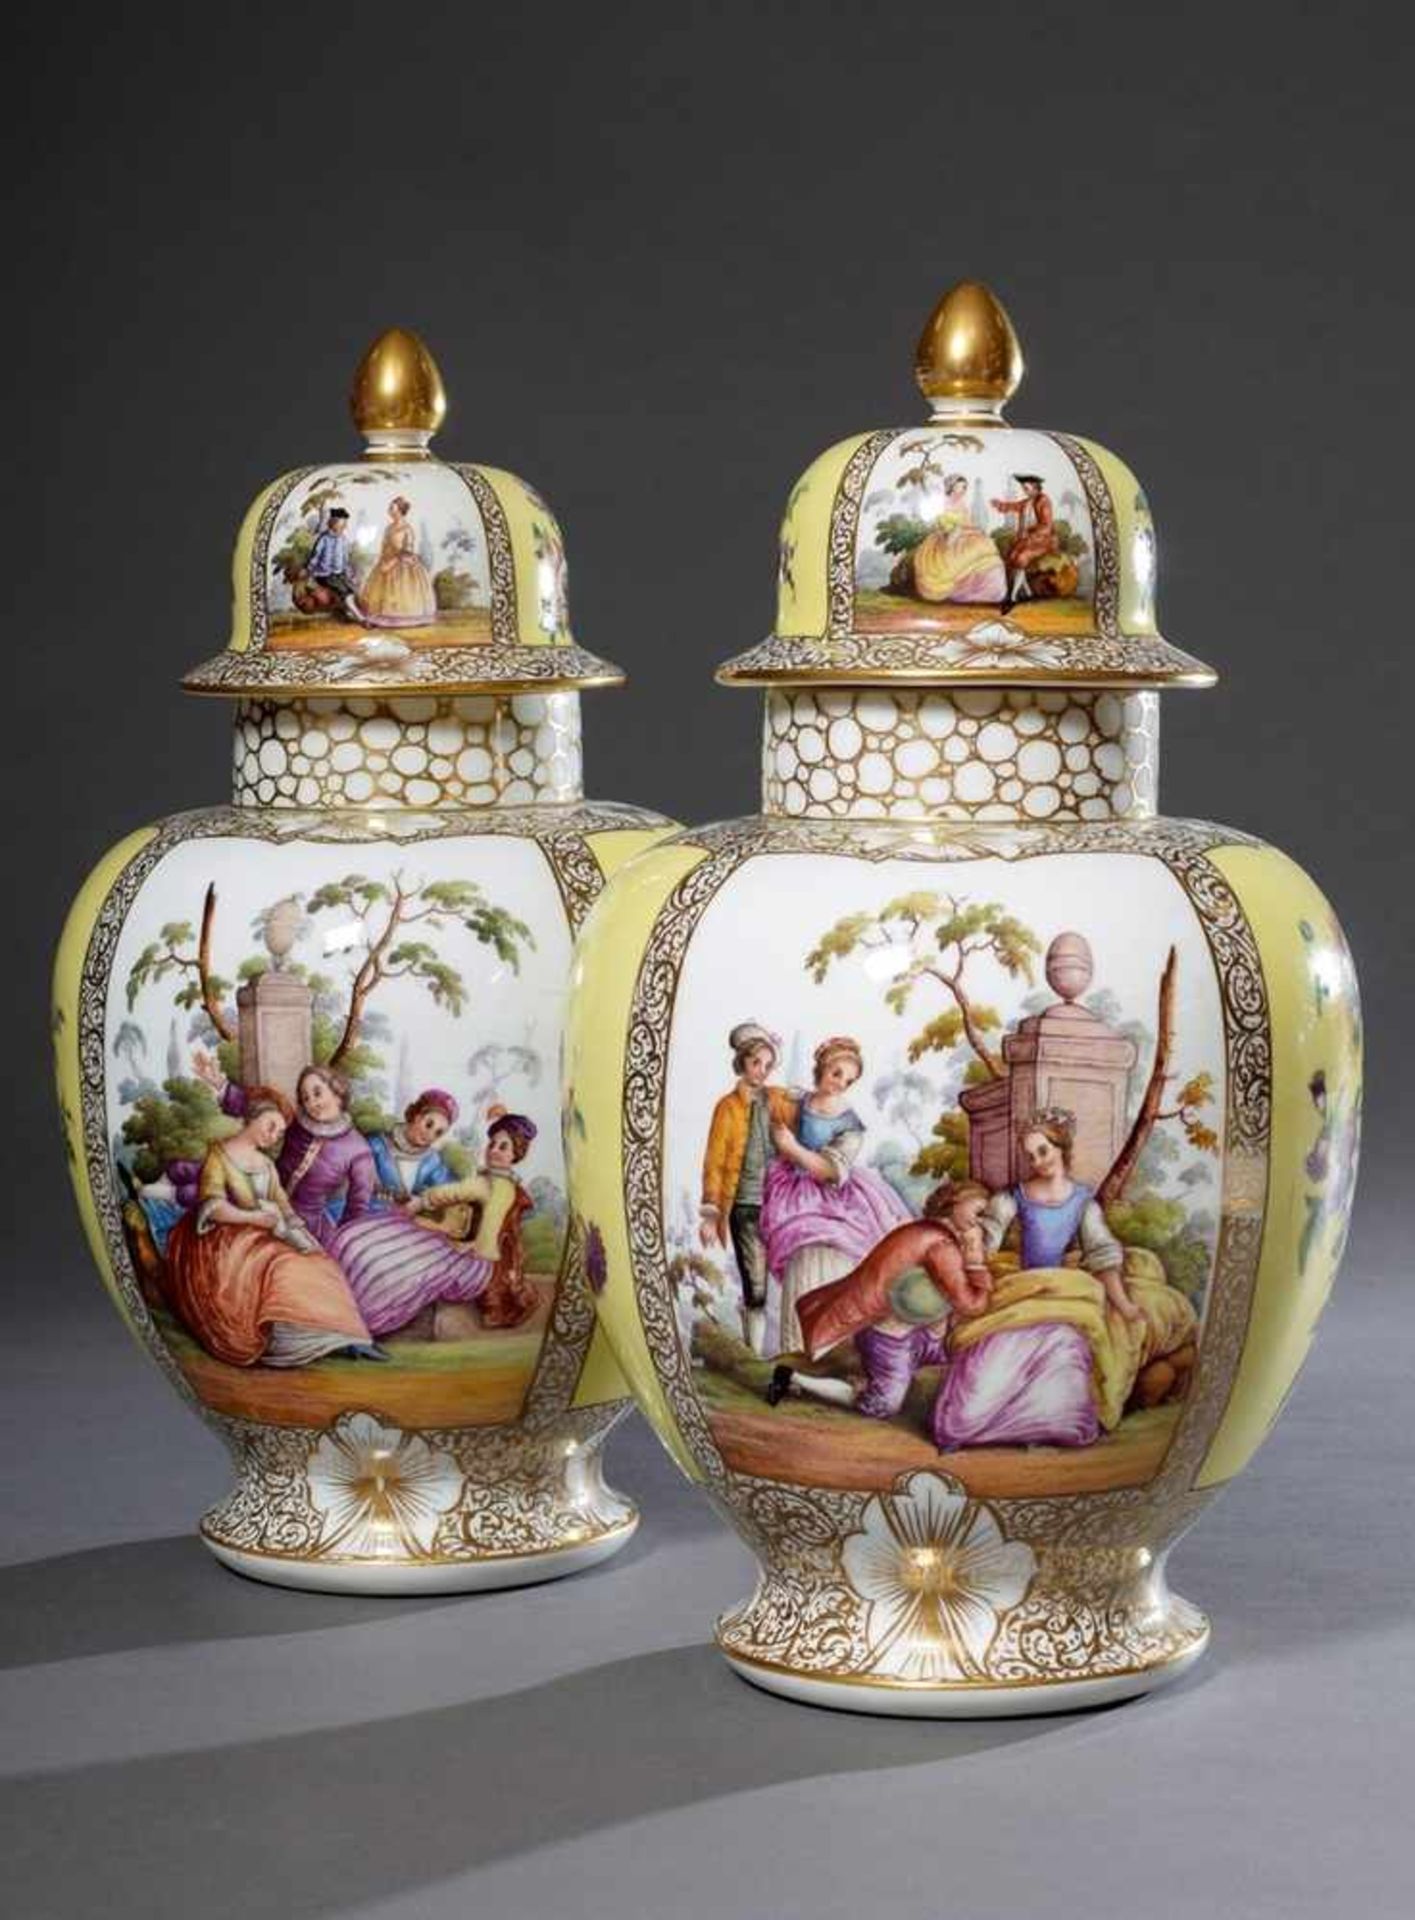 Paar große Dresden Porzellan Deckelvasen, farbig bemalt mit "Watteauszenen" und "Blumenbouquets" auf